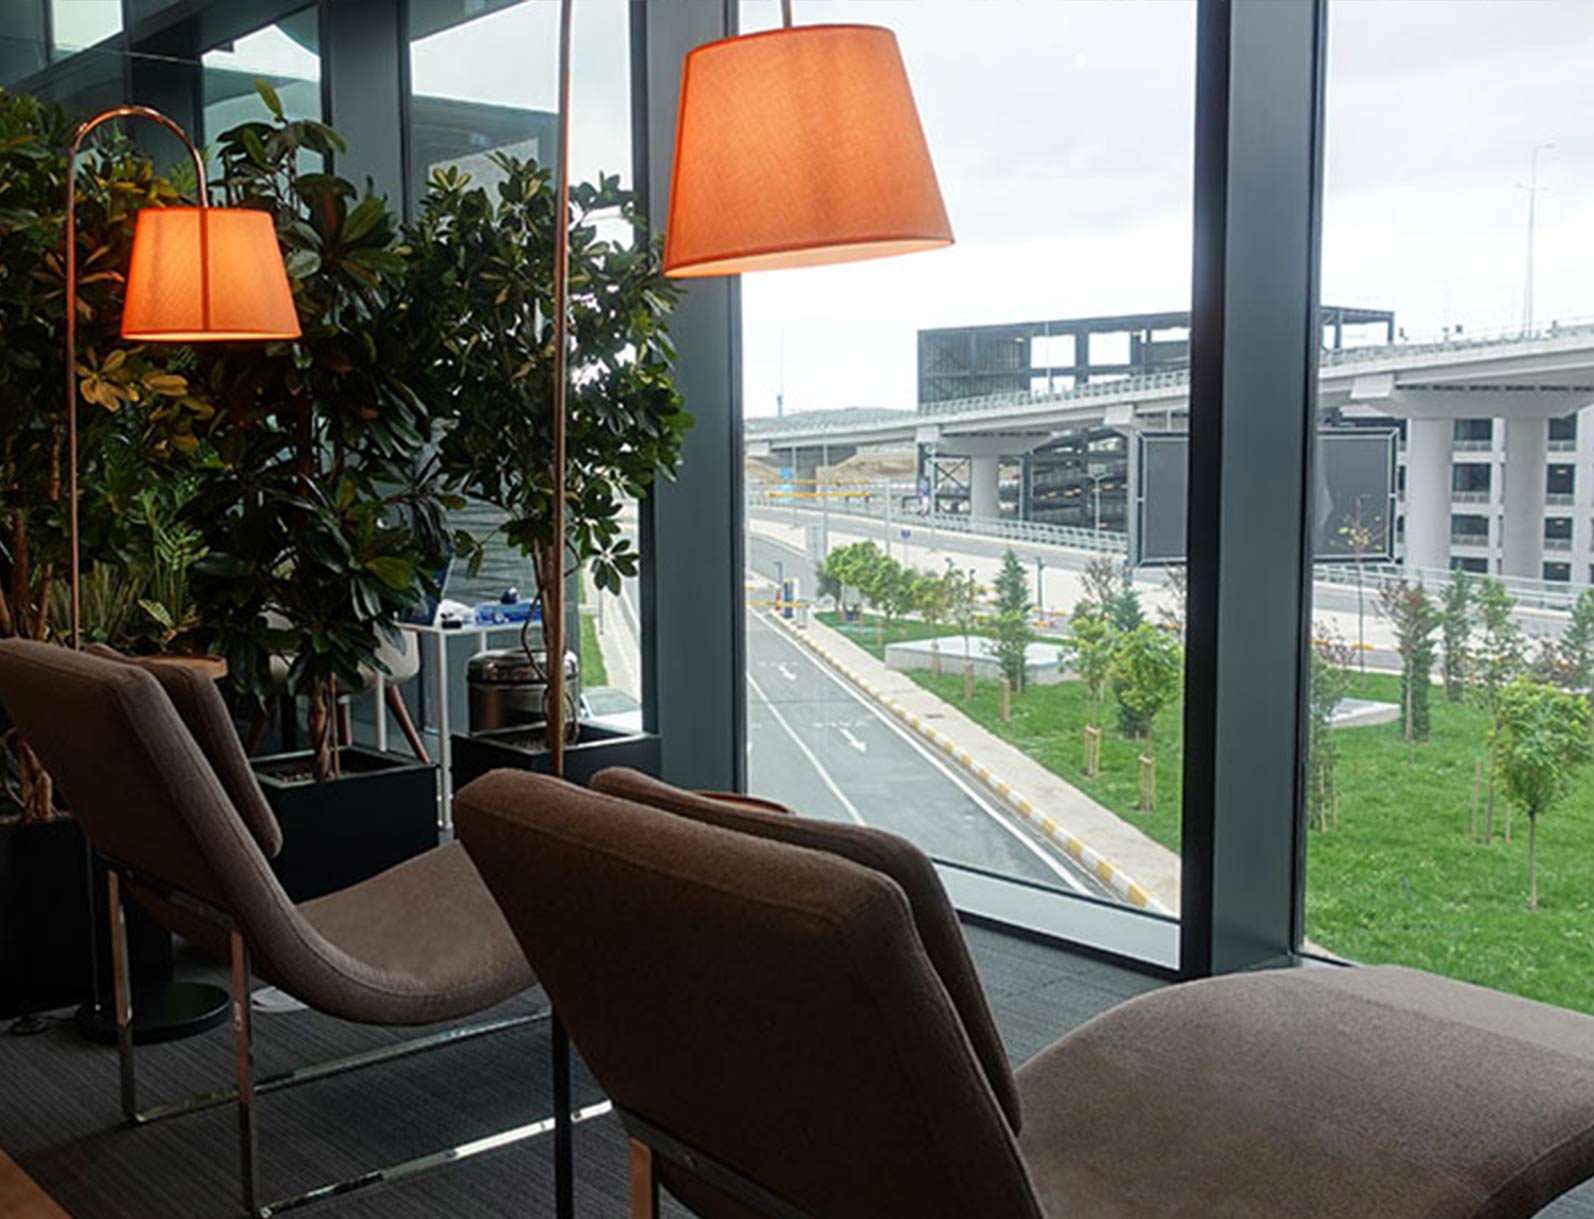 İstanbul Havalimanı, İGA İç Hatlar Lounge girişinde ücretsiz buggy hizmeti ile %30 indirim kazan.ücretsiz buggy -5